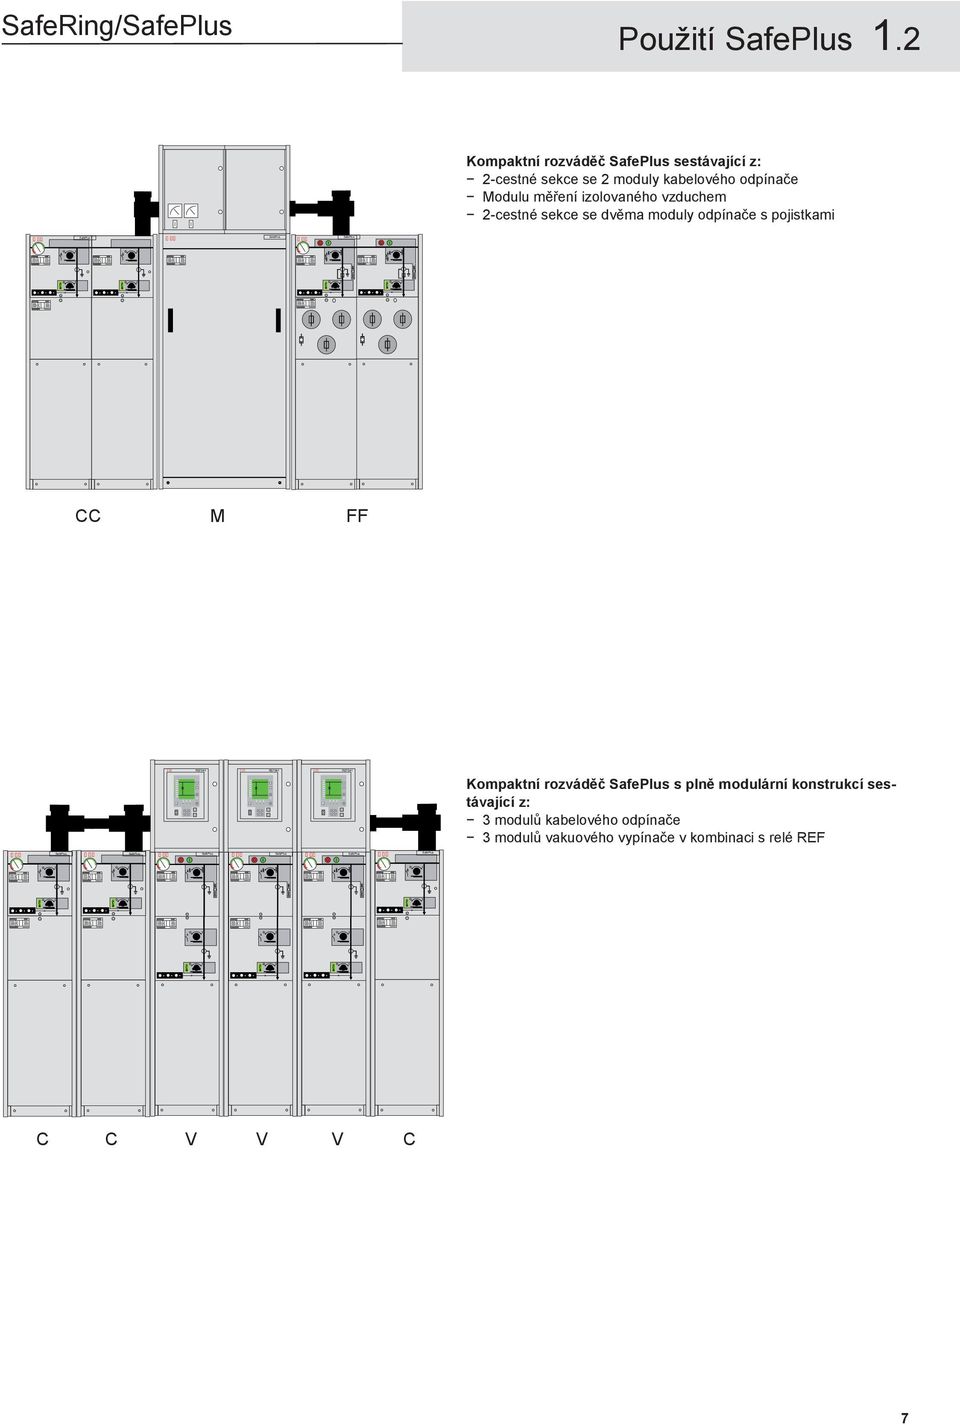 2 Kompaktní rozváděč SafePlus sestávající z: 2-cestné sekce se 2 moduly kabelového odpínače Modulu měření izolovaného